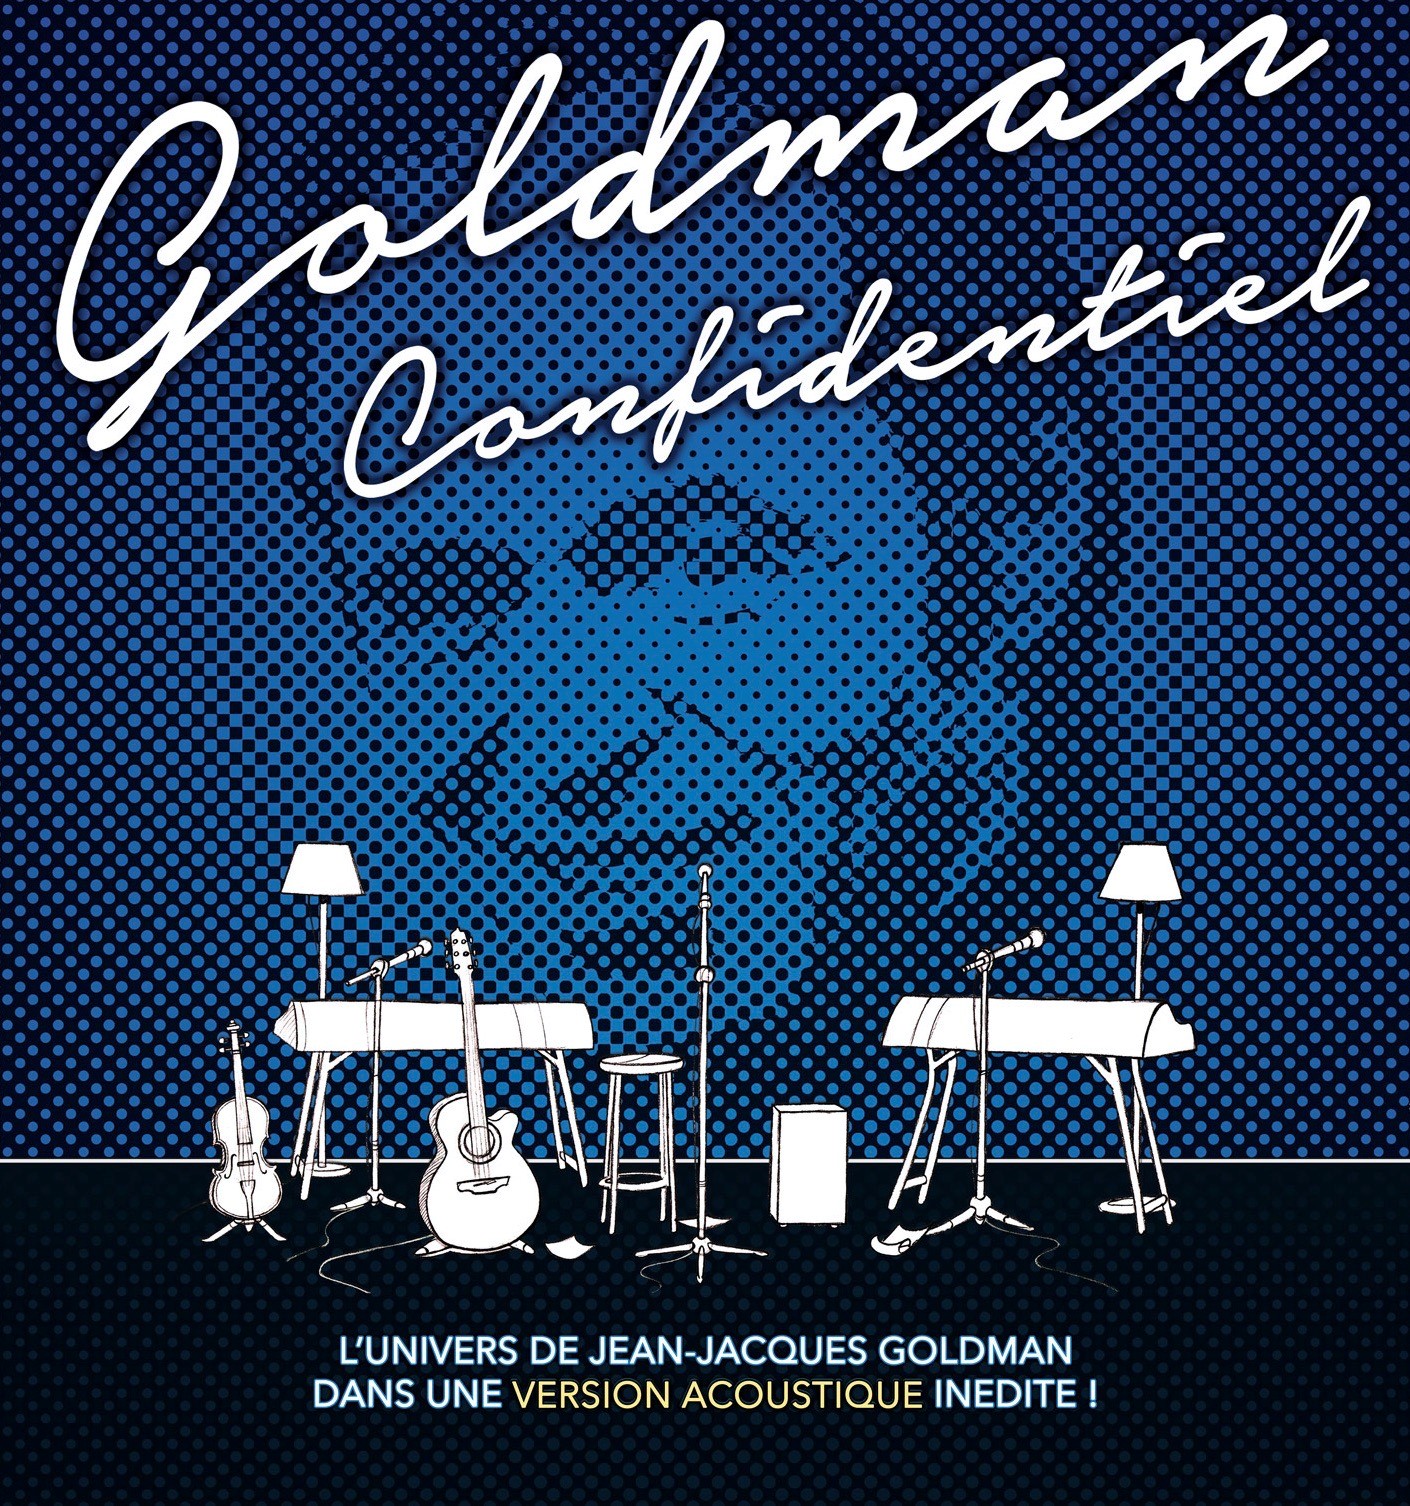 Dessins d'instruments en blanc sur un portrait bleuté de Jean-Jacques Goldman en fond